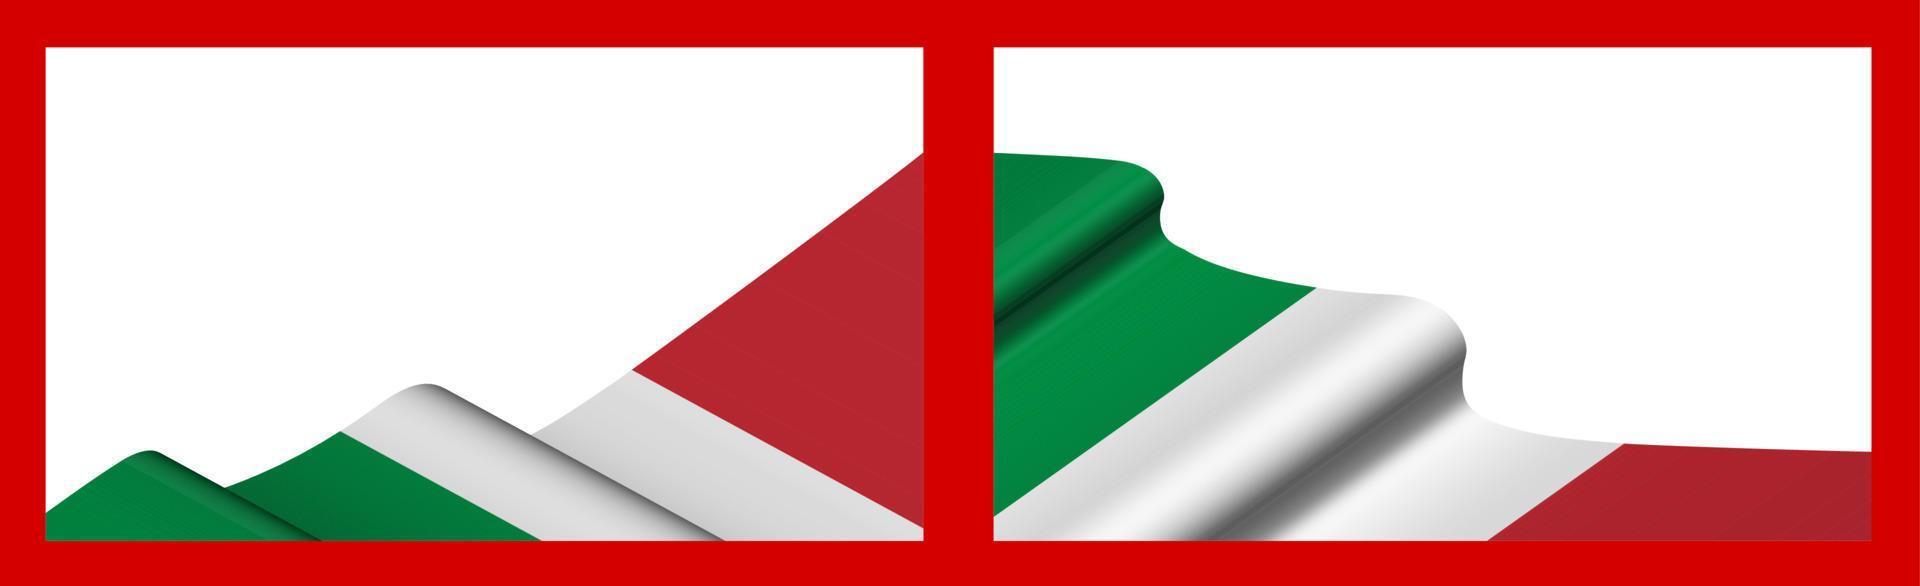 plano de fundo, modelo para design festivo. bandeira italiana balançando ao vento. vetor realista em fundo vermelho